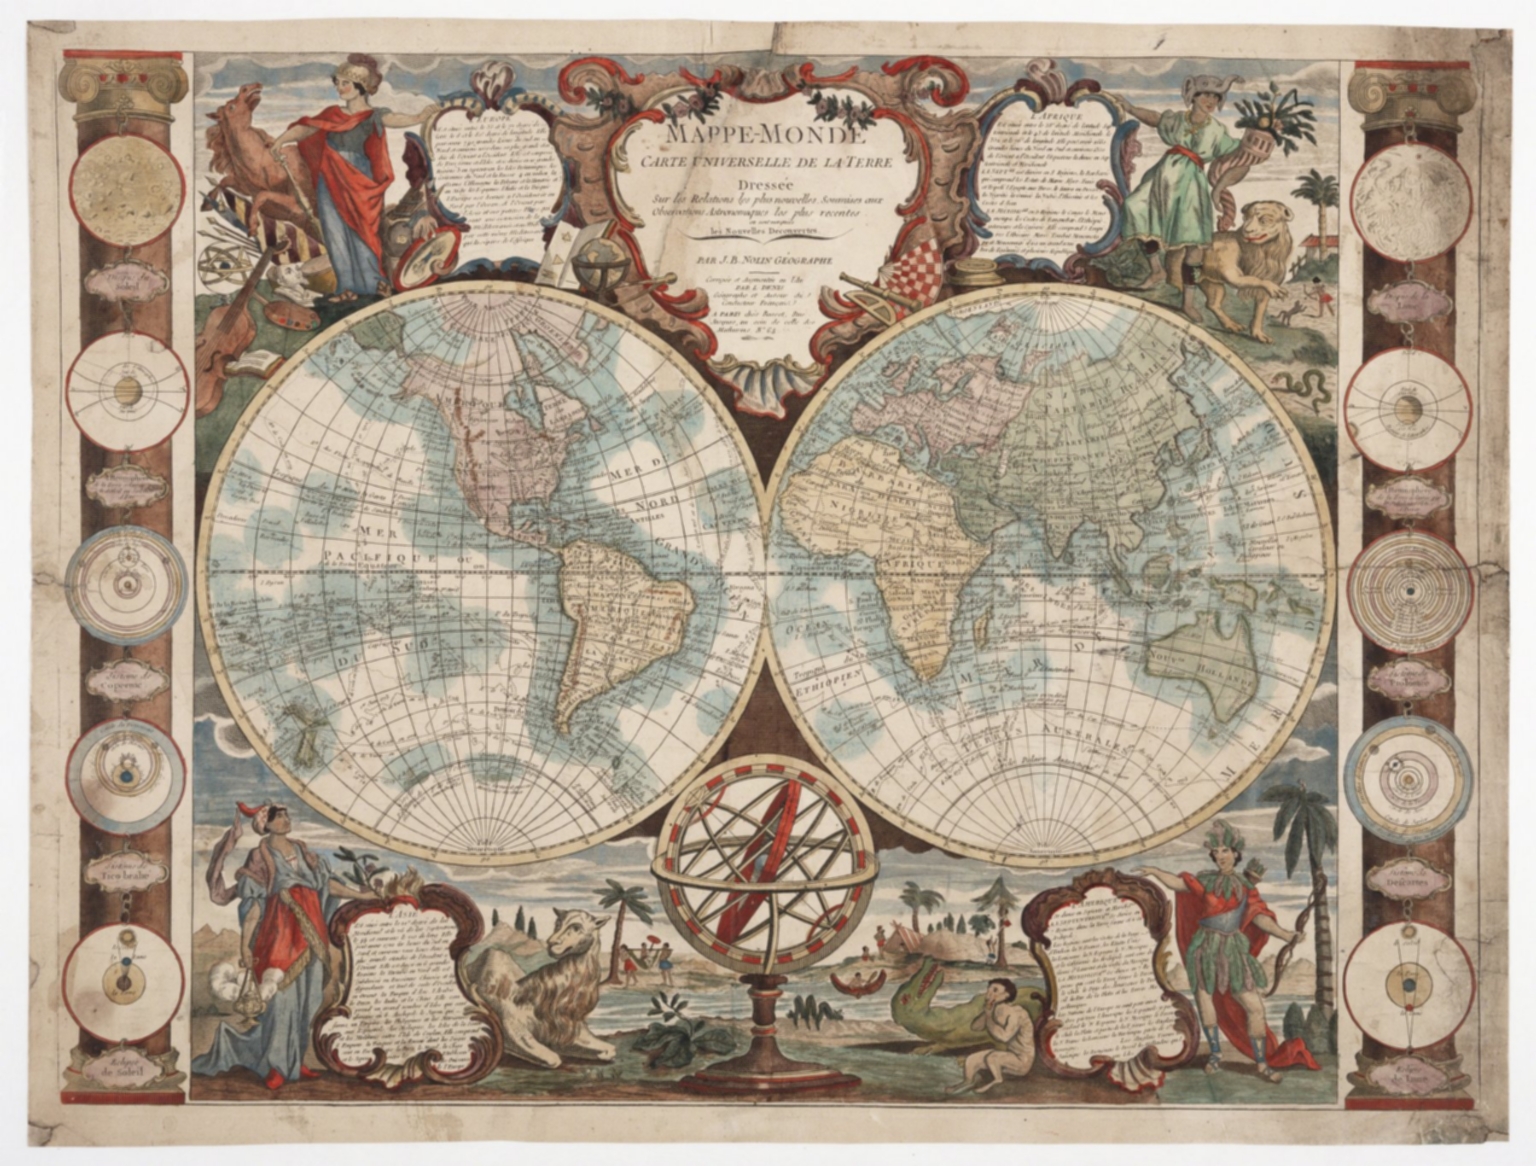 Mappe-monde : carte universelle de la terre, dressée sur les relations les plus nouvelles, soumises aux observations astronomiques les plus recentes ou sont marquées les nouvelles découvertes